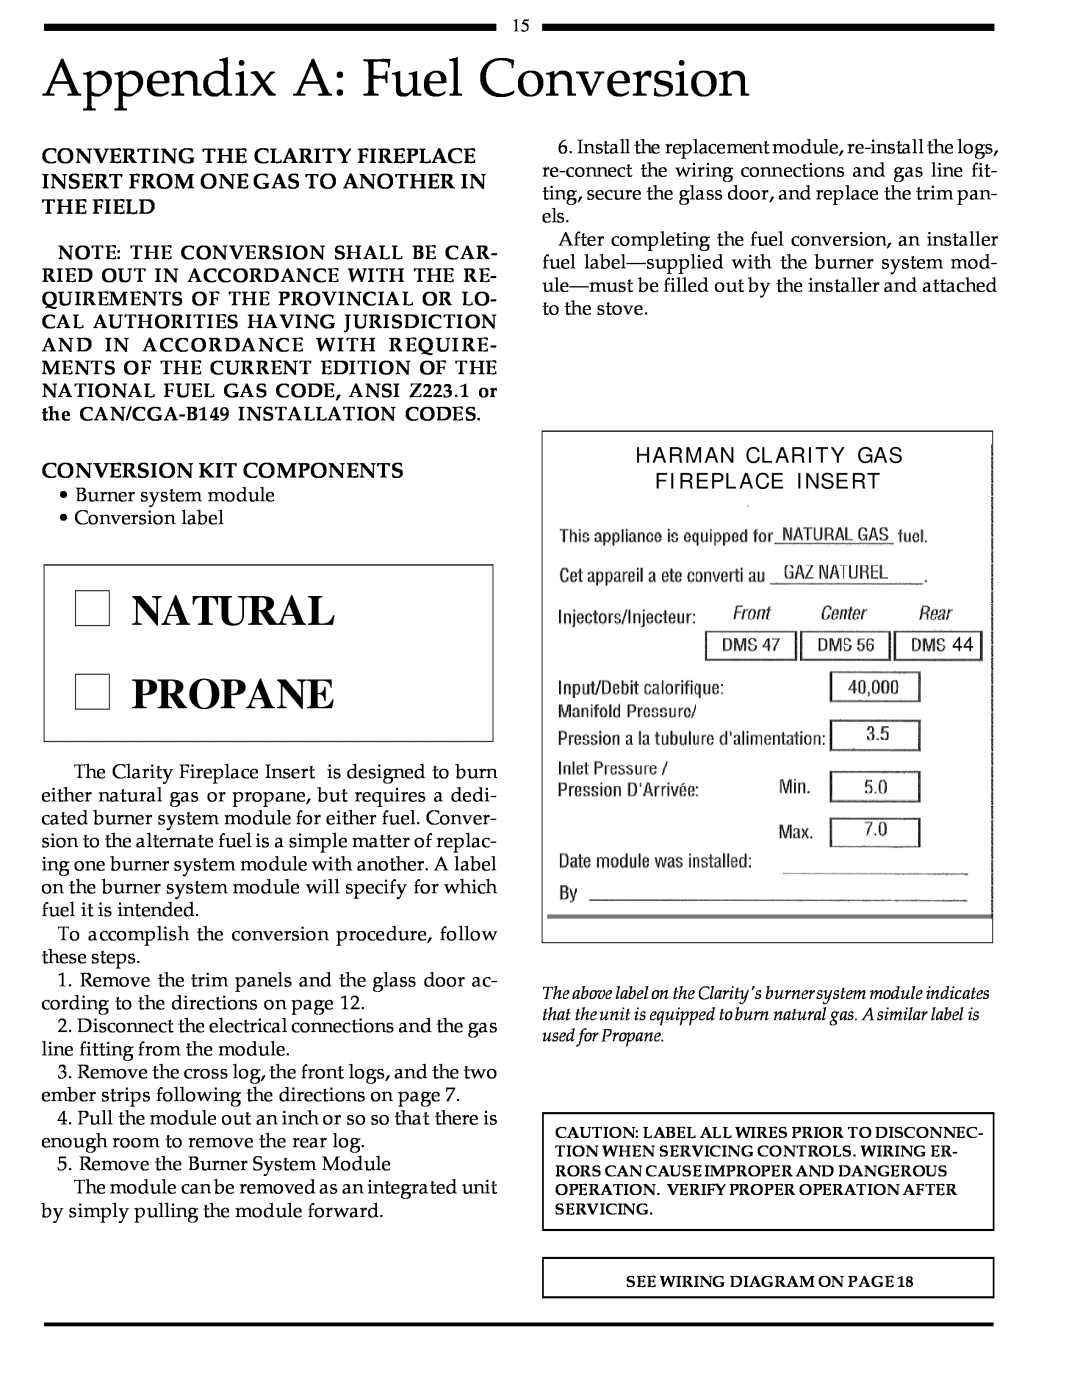 Harman Stove Company 828i manual Appendix A Fuel Conversion, Natural Propane, Conversion Kit Components 